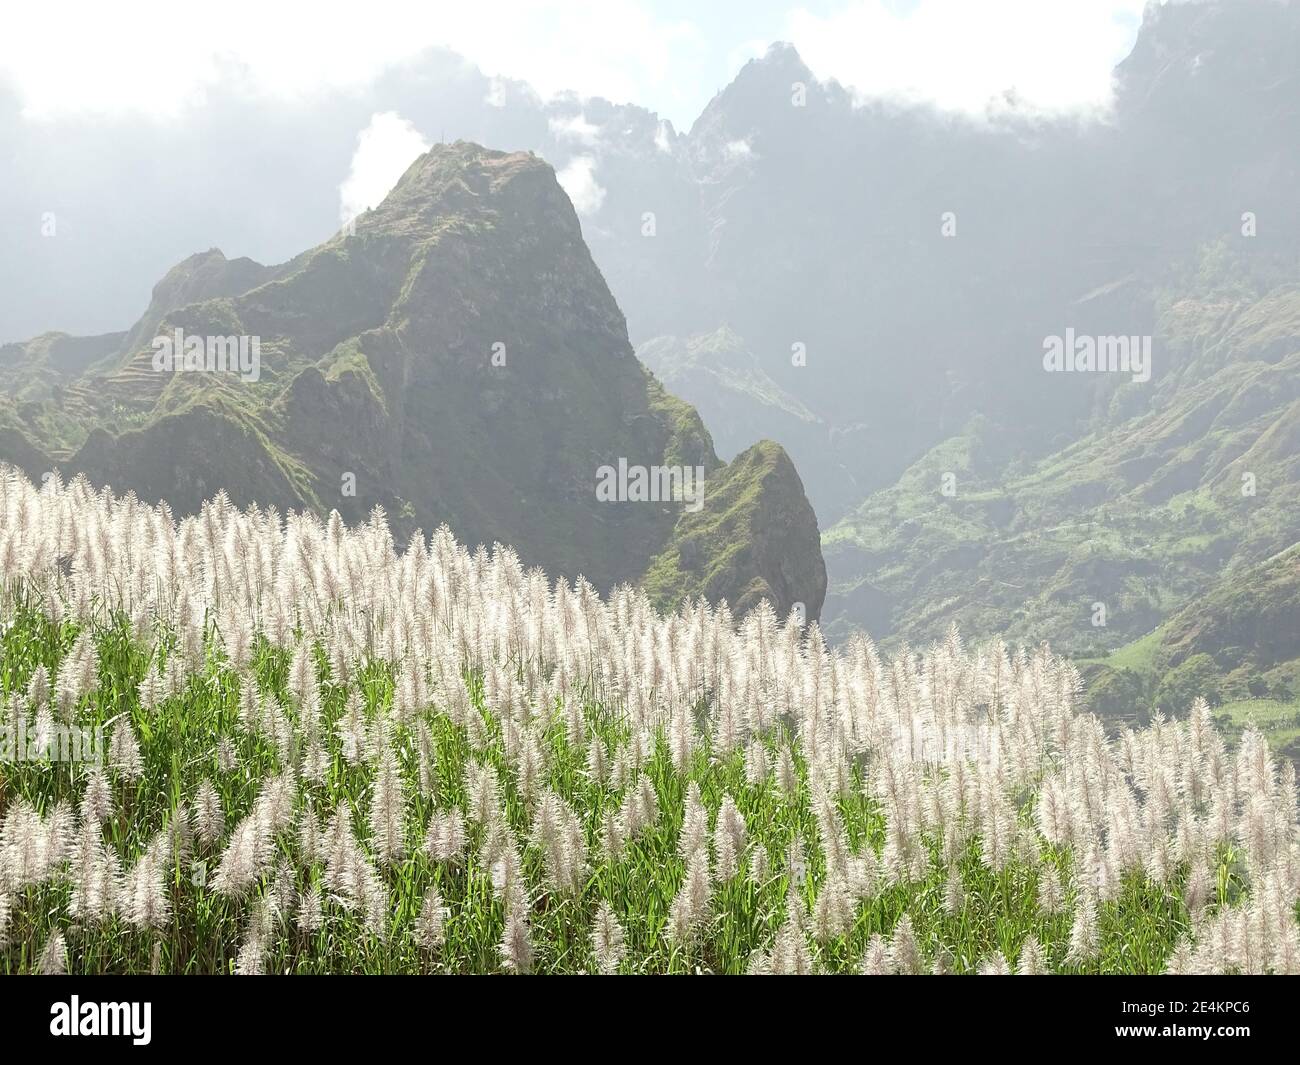 Sugar cane plantations, Cape Verde, Santo Antao island. Stock Photo